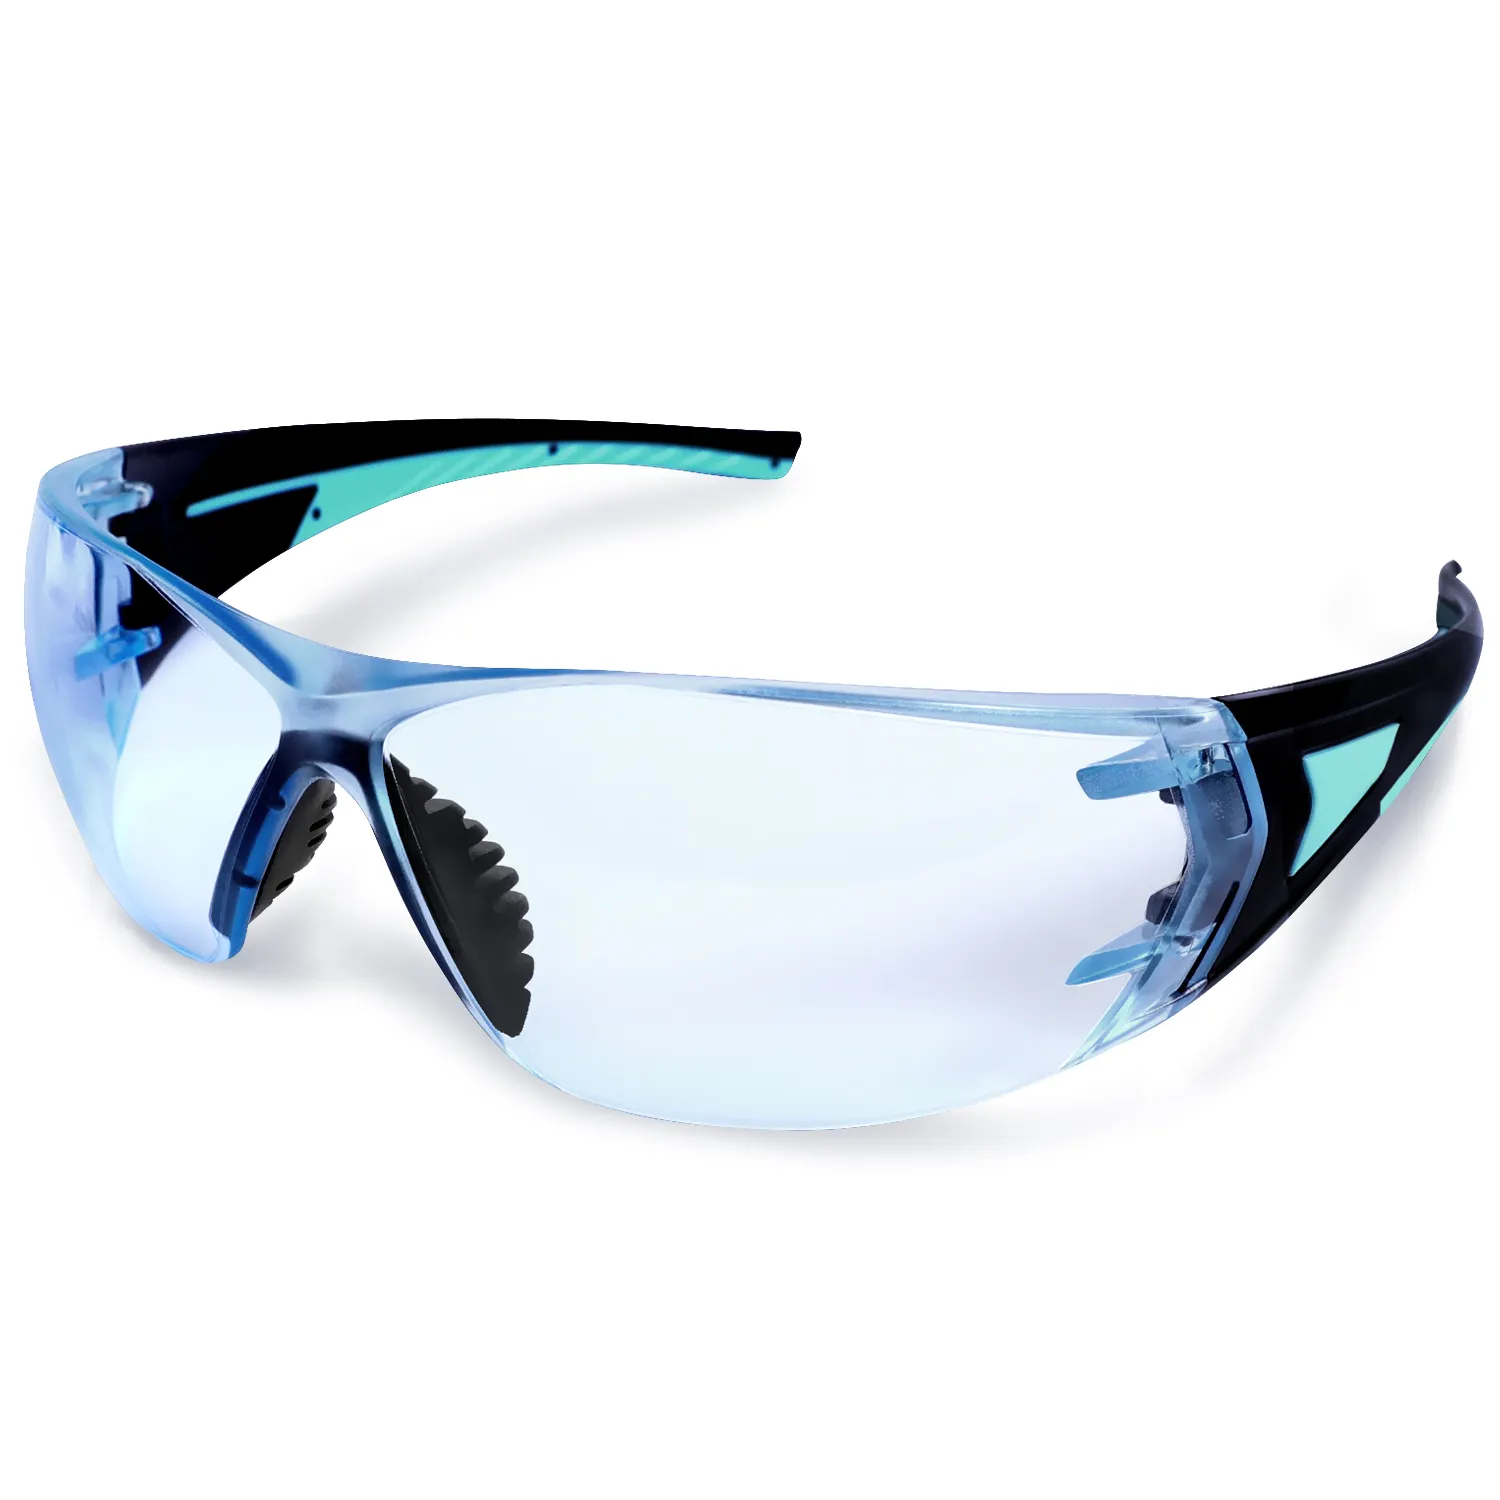 نظارات أمان من منافساة مخصصة باللونين الأزرق والأخضر مضادة للضباب وعدسات مضادة للرياح والغبار والماء مع إطار من البولي كربونات